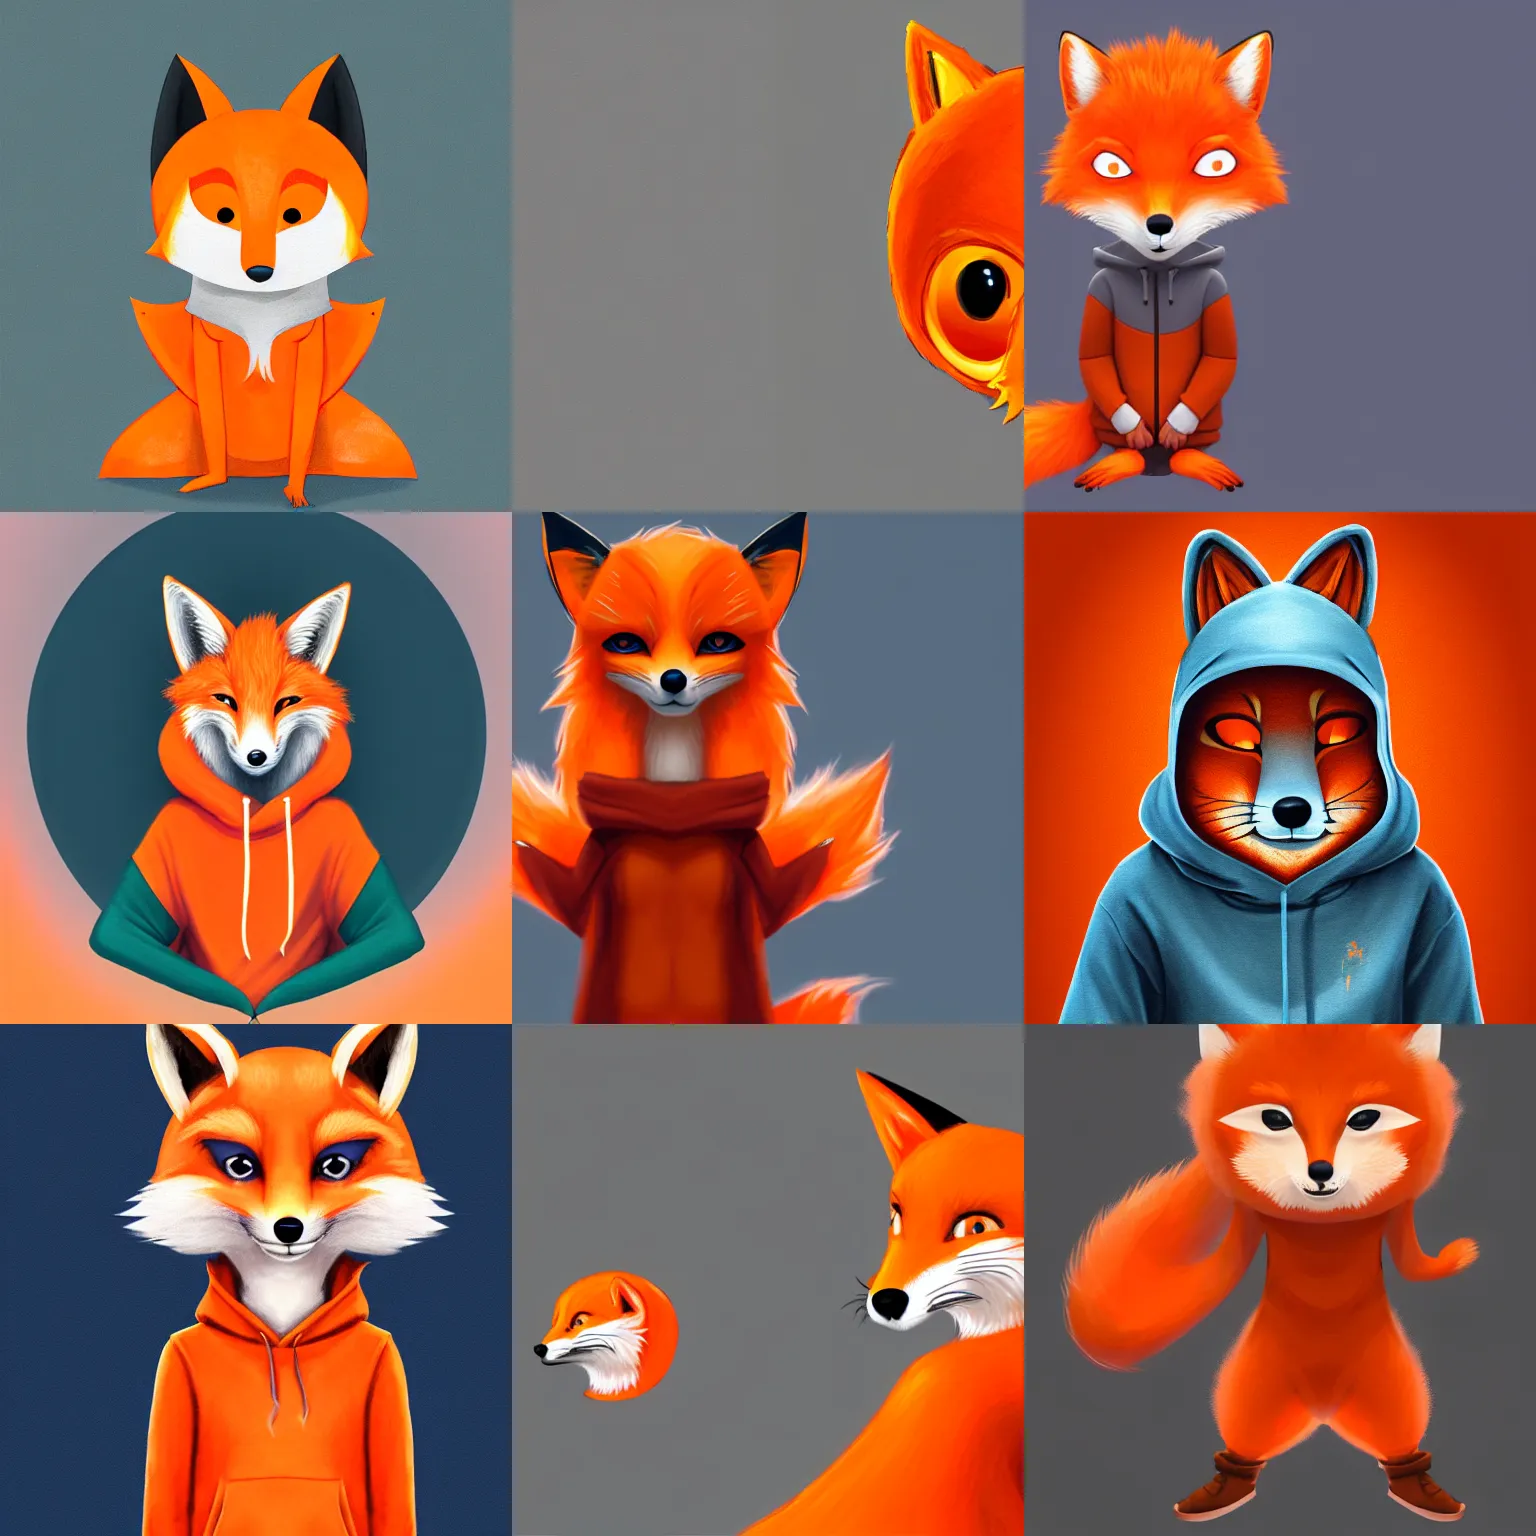 Prompt: a orange anthropomorphic fox wearing a hoodie, artstation, detailed digital painting